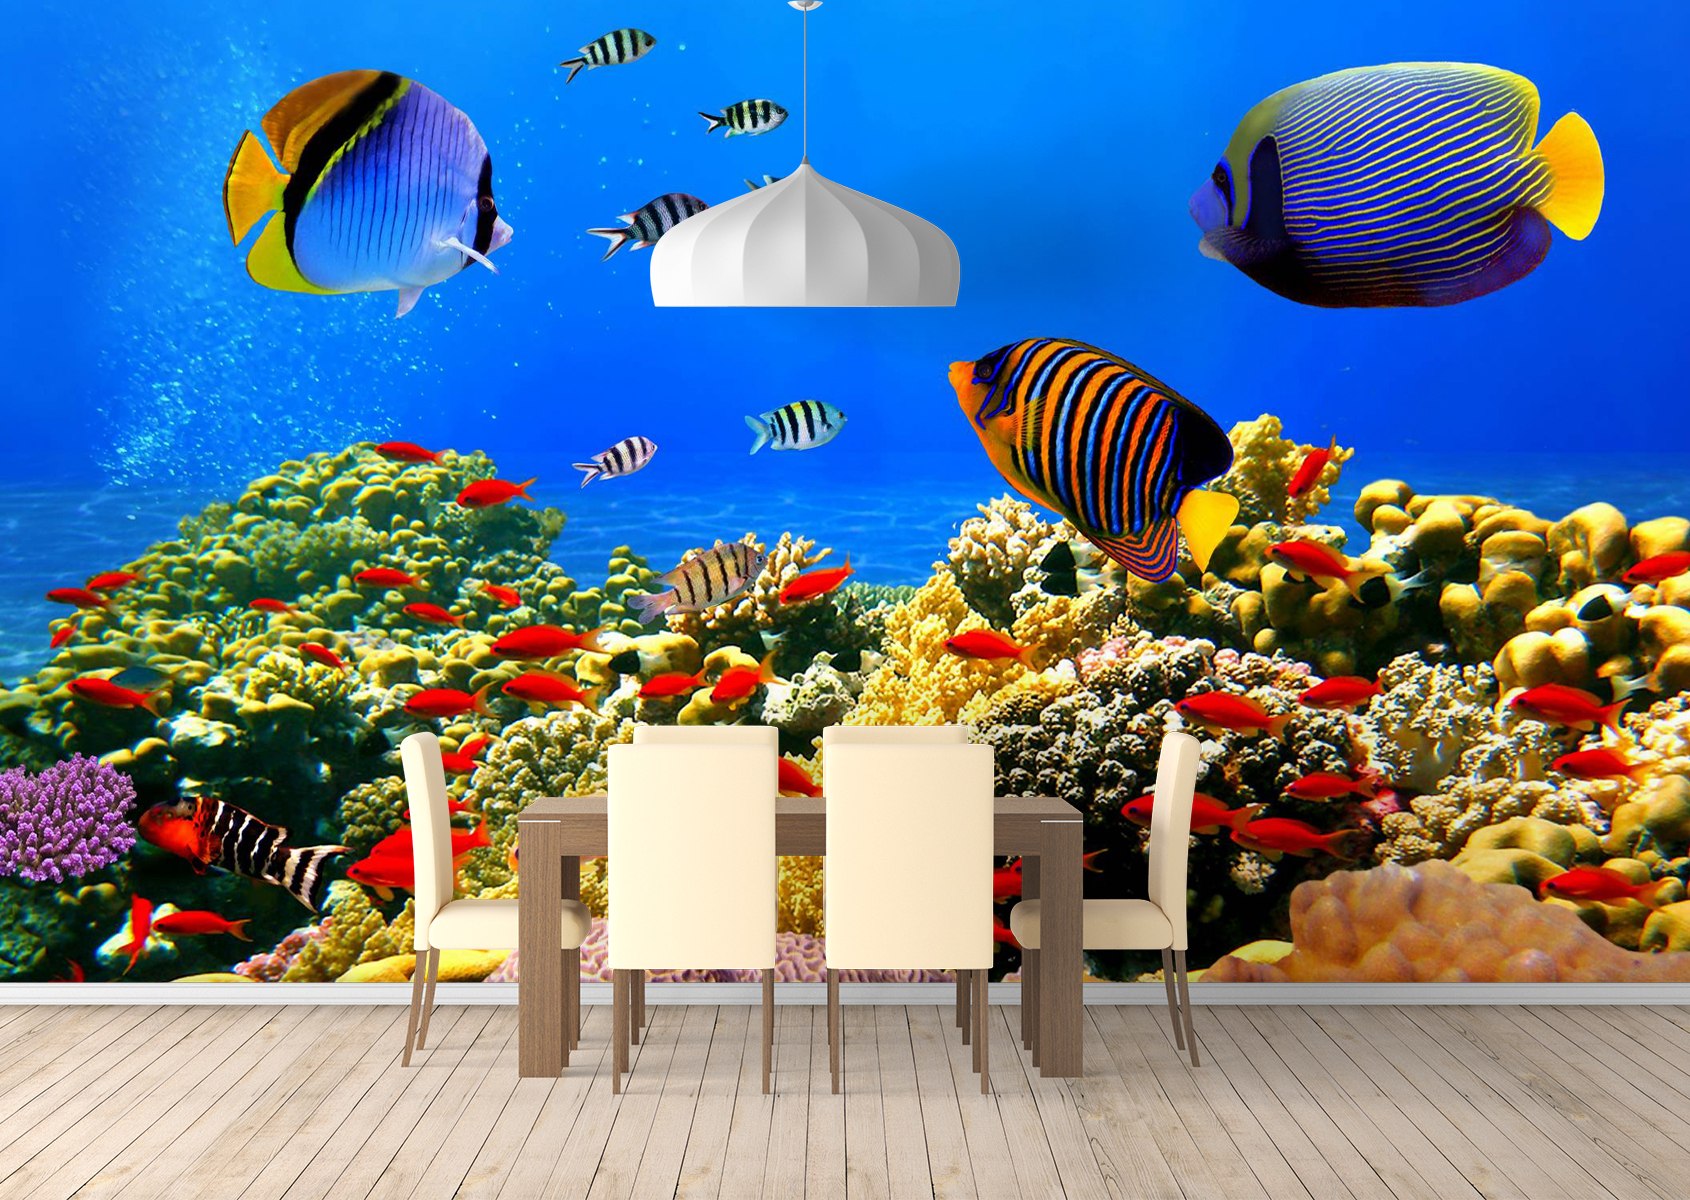 Underwater World Desktop Wallpaper 